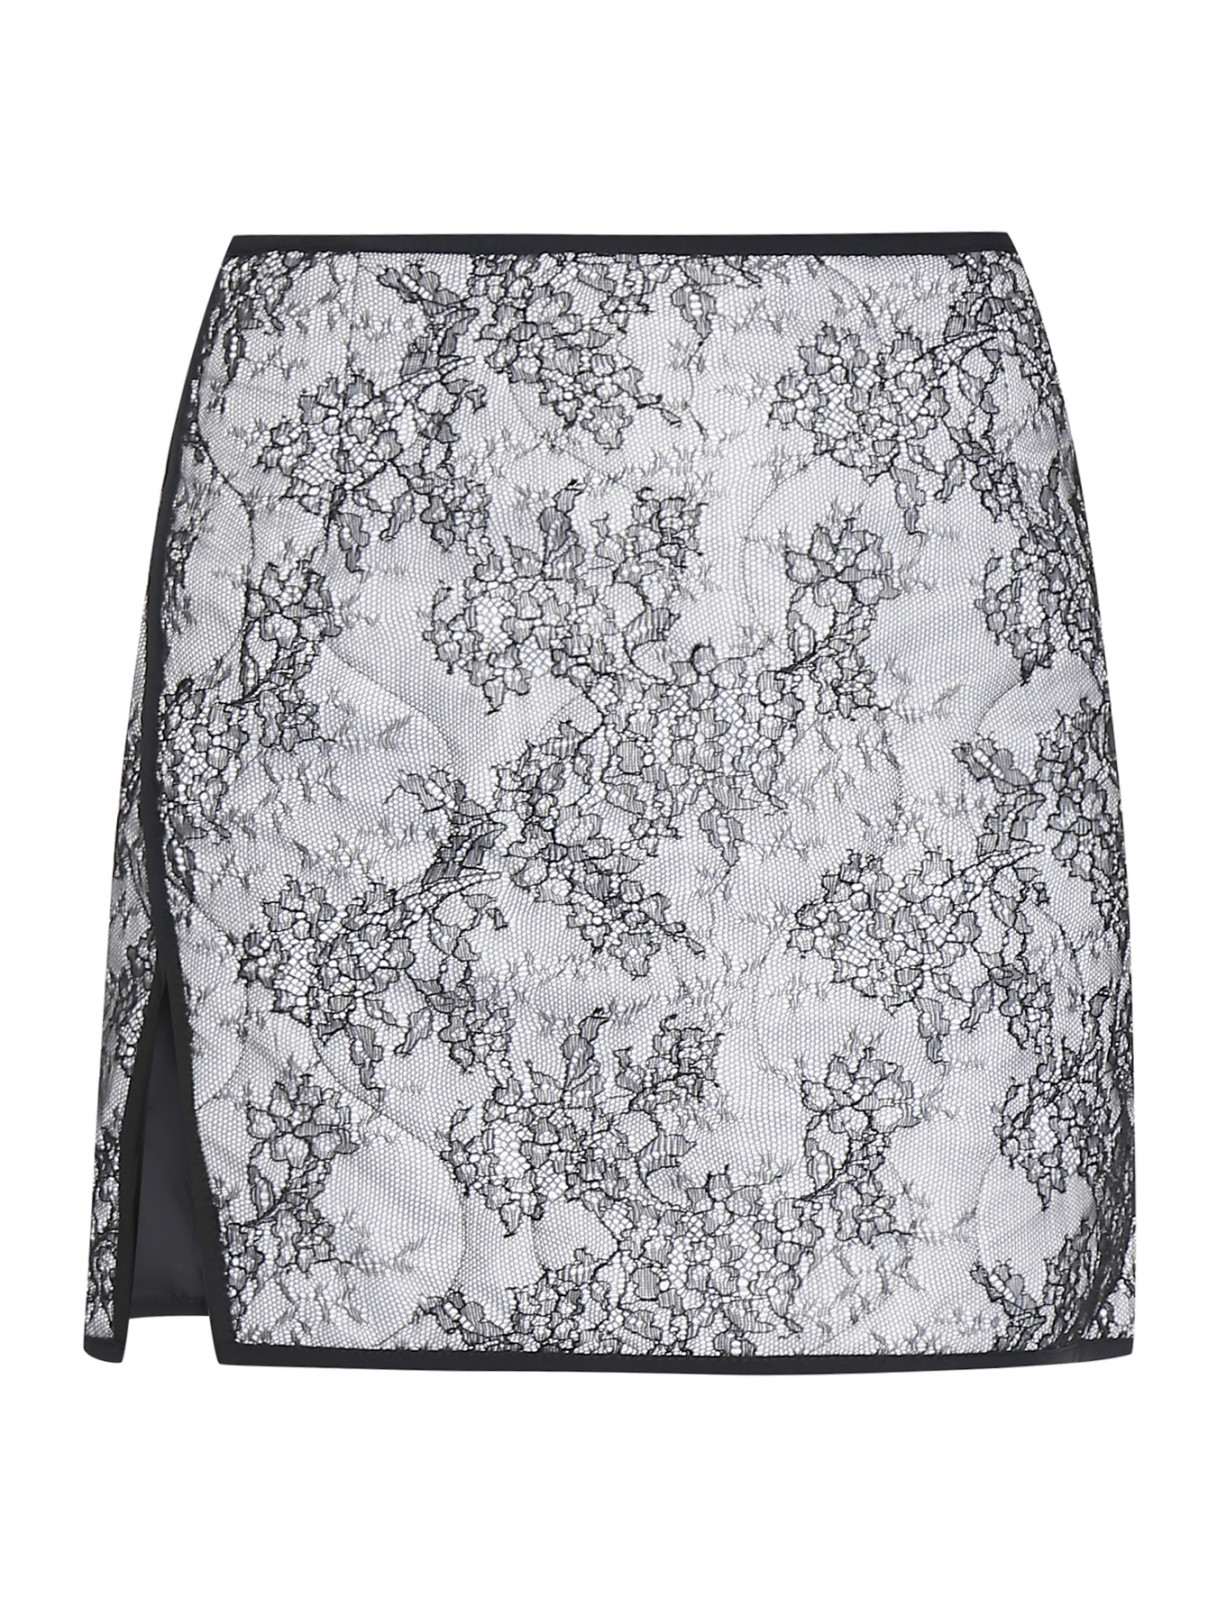 Стеганая юбка-мини декорированная кружевом N21  –  Общий вид  – Цвет:  Черный